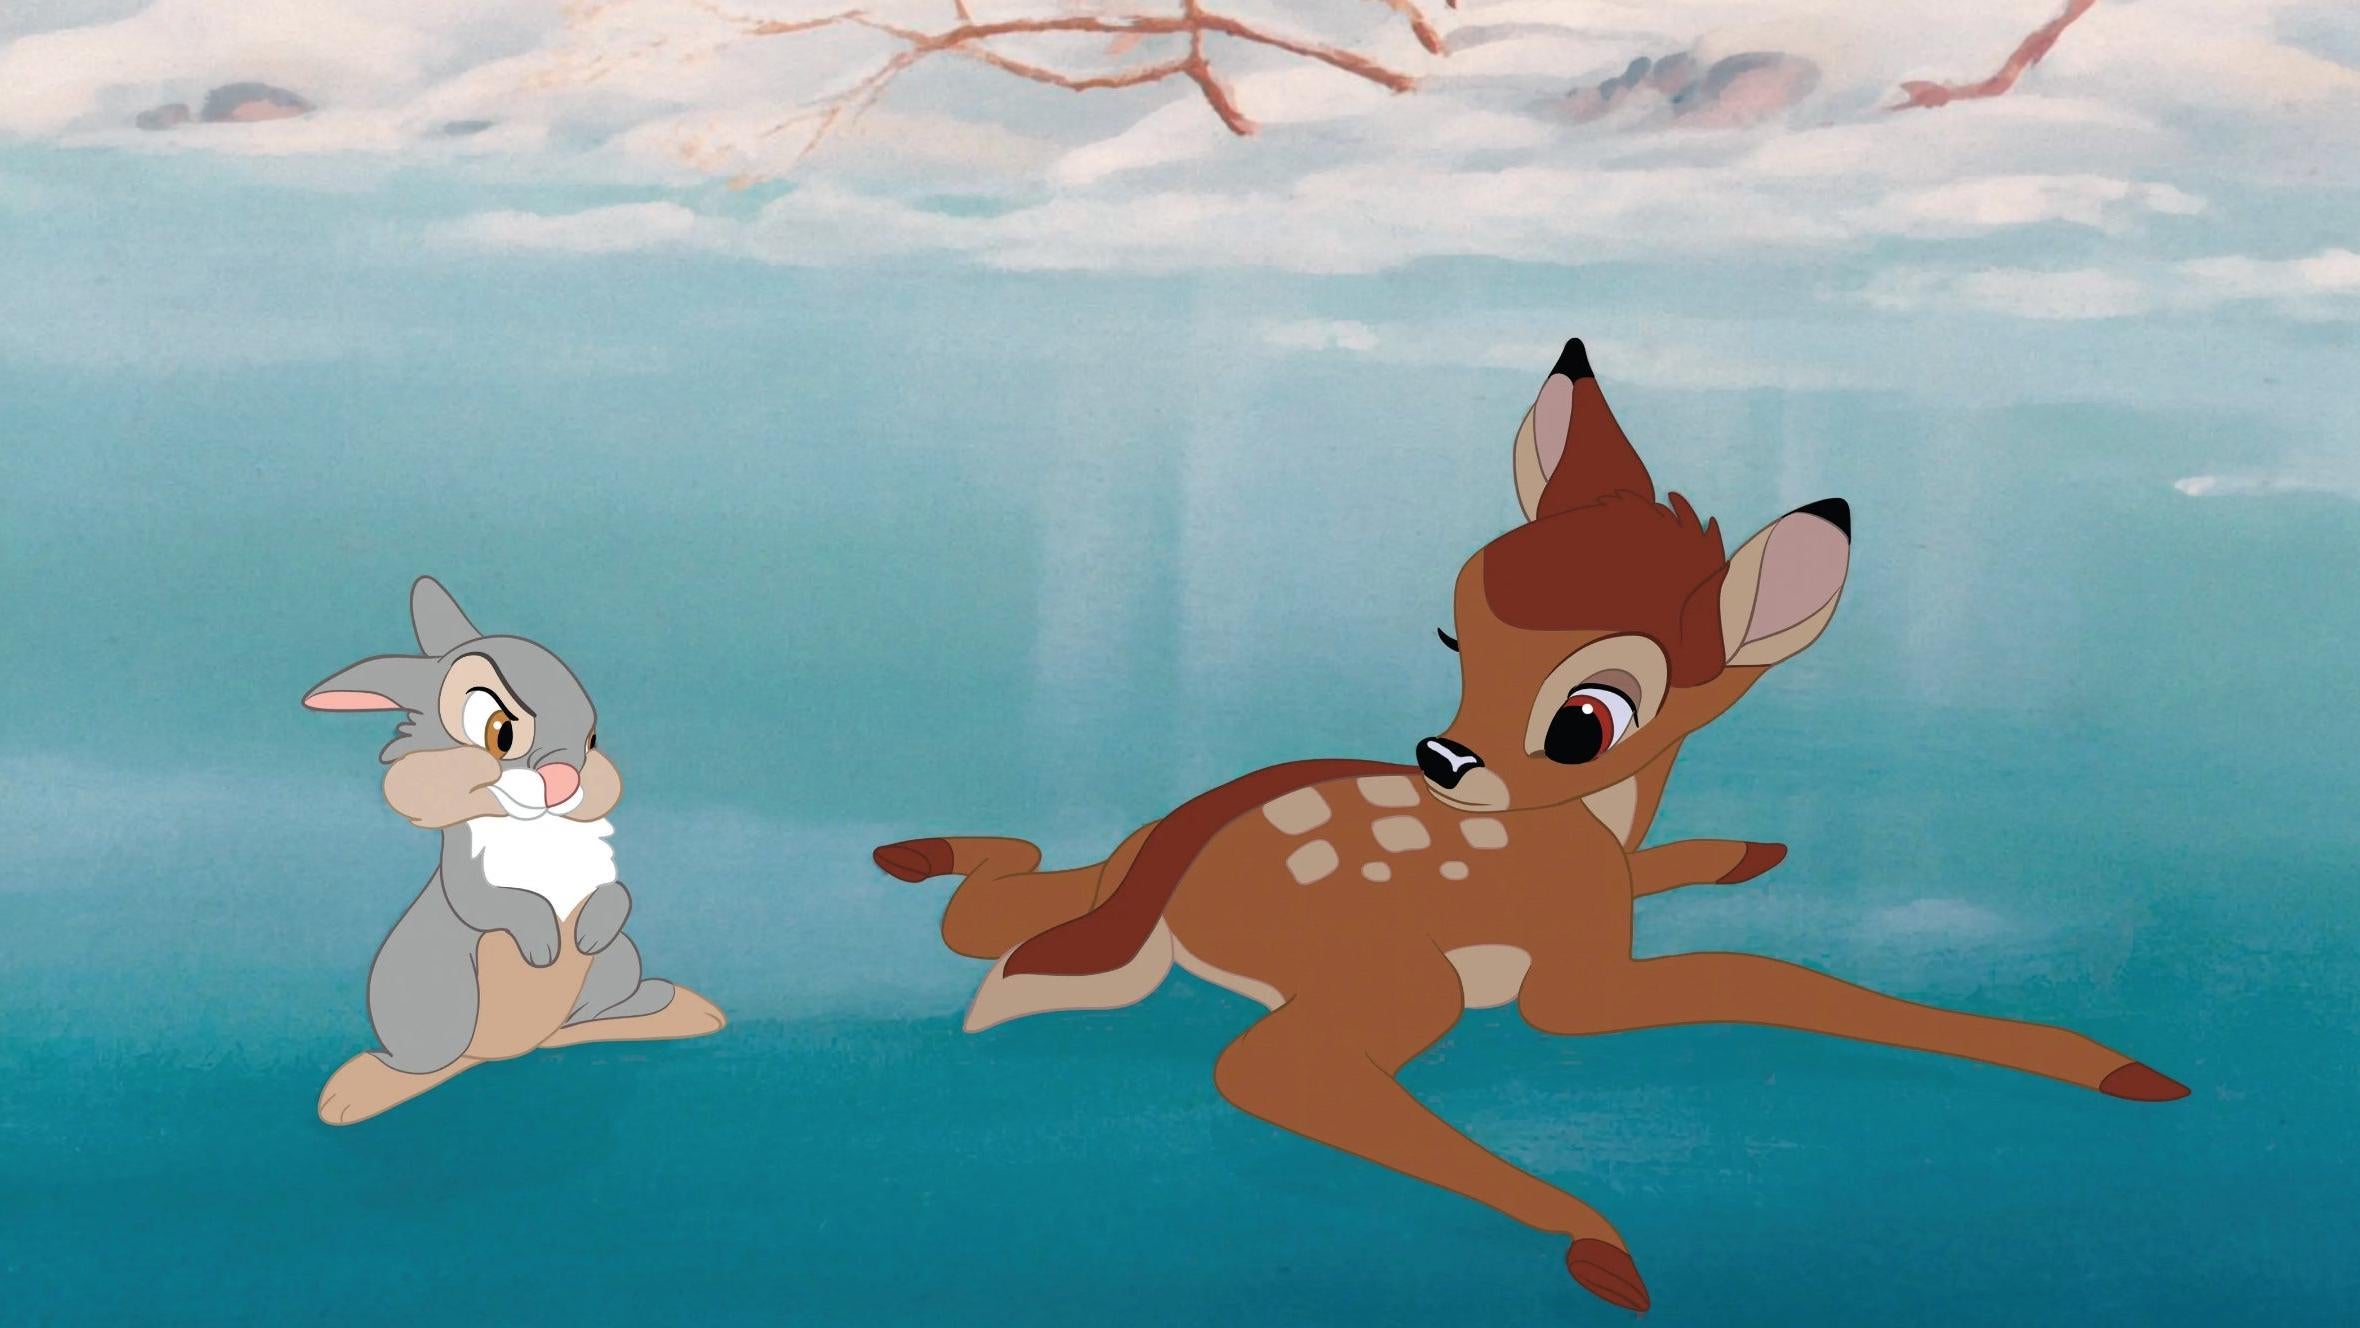 Bambi (Image: Disney)